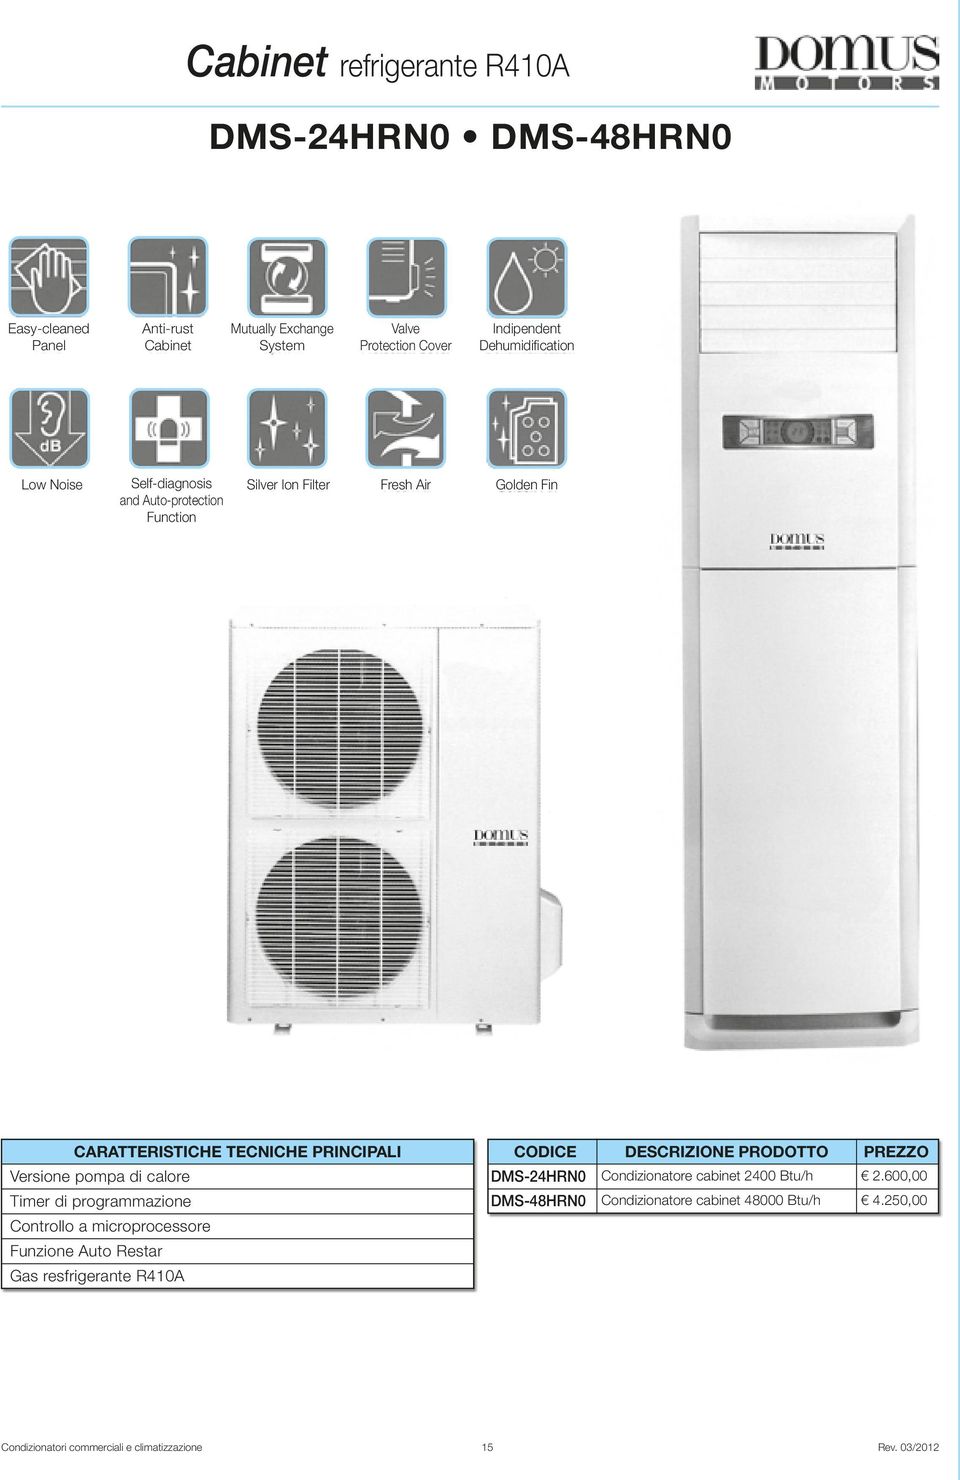 Versione pompa di calore Timer di programmazione CODICE DMS-24HRN0 DMS-48HRN0 DESCRIZIONE PRODOTTO Condizionatore cabinet 2400 Btu/h Condizionatore